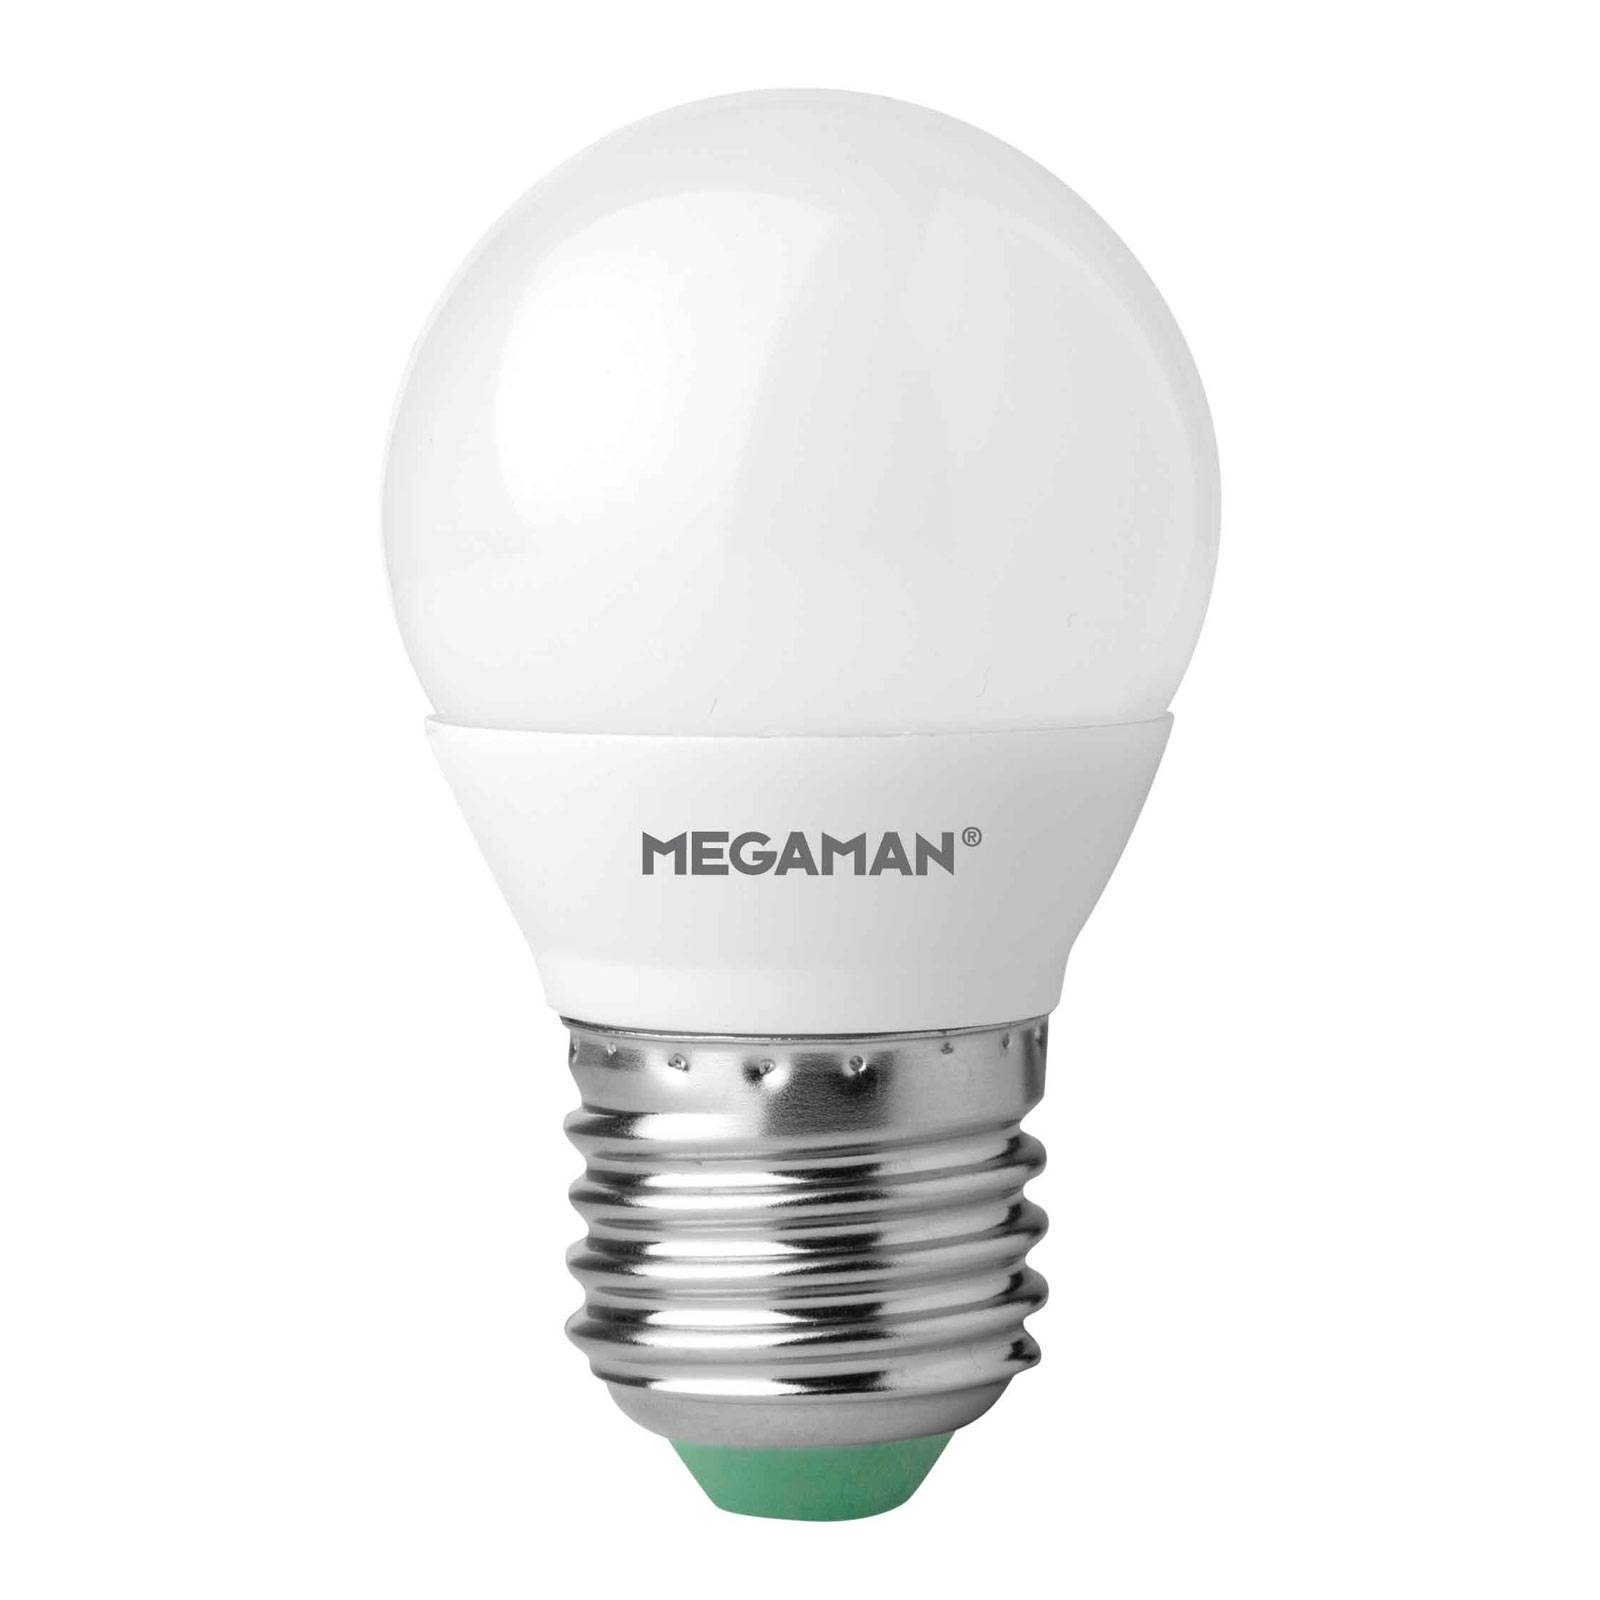 LED lámpa E27 Miniglobe 5,5W, meleg fehér